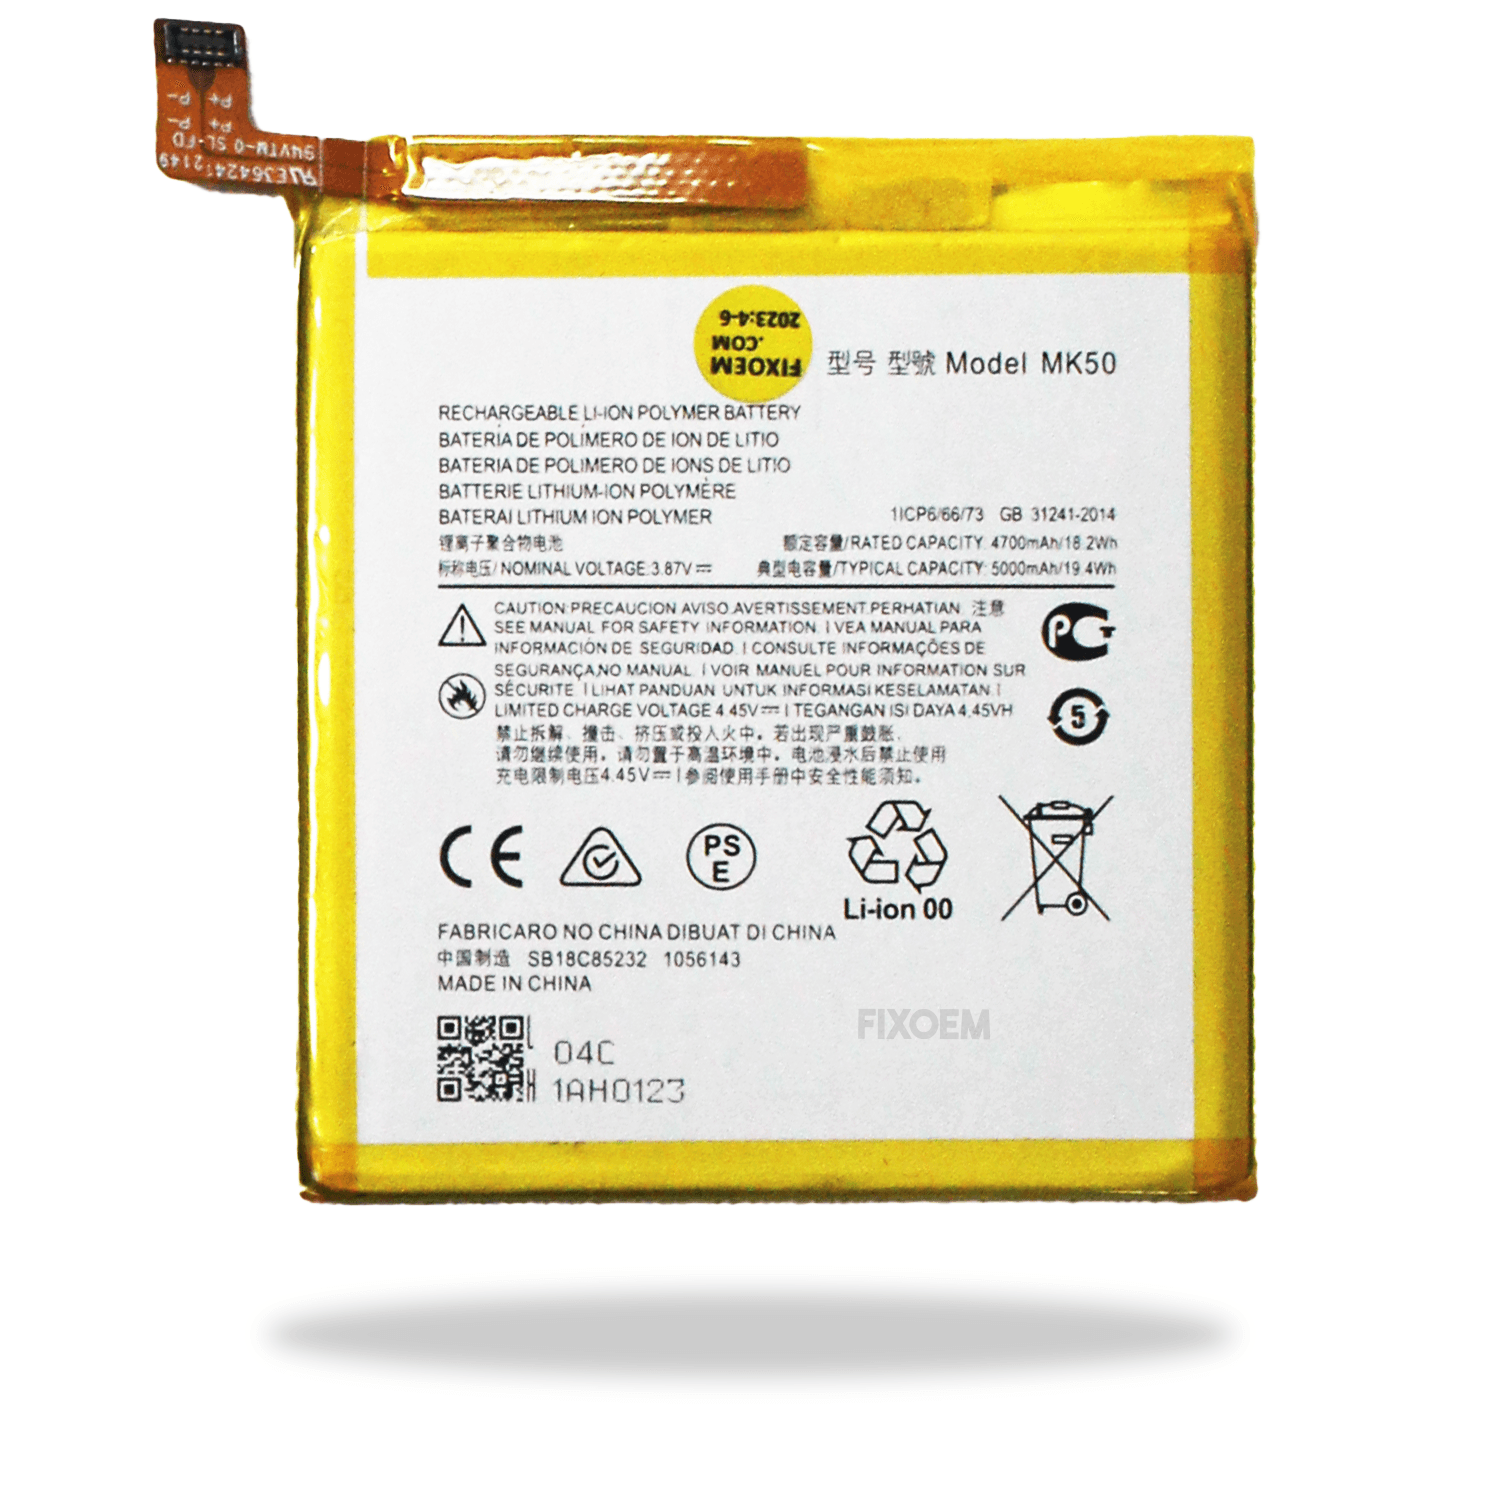 Bateria Moto G 5G Xt2113-3 MK50 a solo $ 160.00 Refaccion y puestos celulares, refurbish y microelectronica.- FixOEM